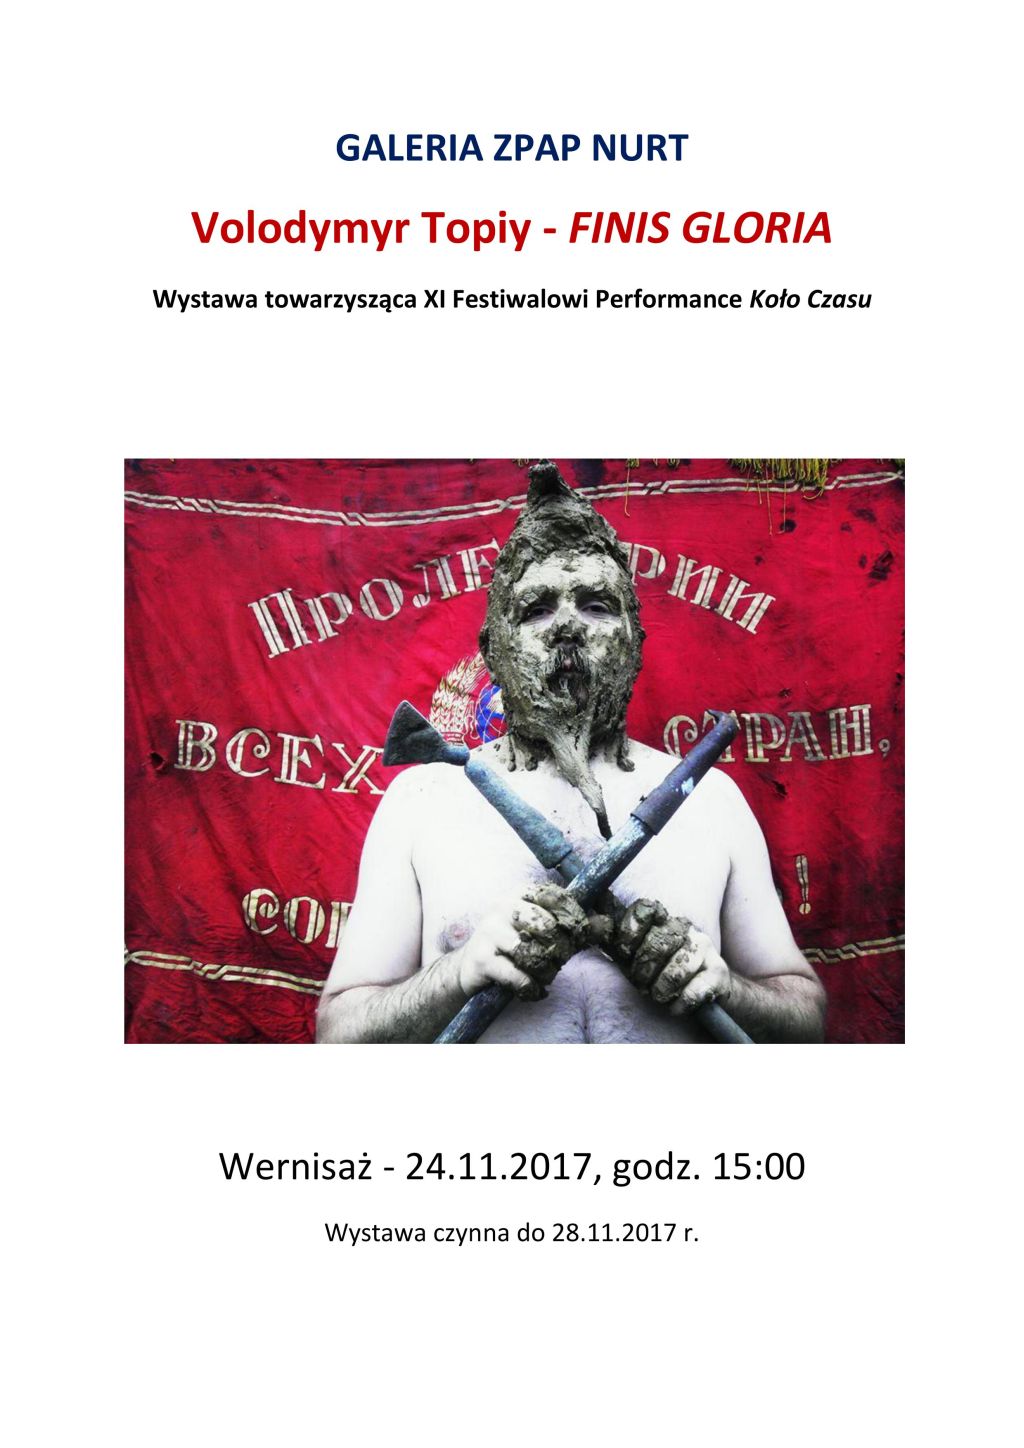 Zapraszamy na wystawę “Finis Gloria” – Volodymyr Topiy